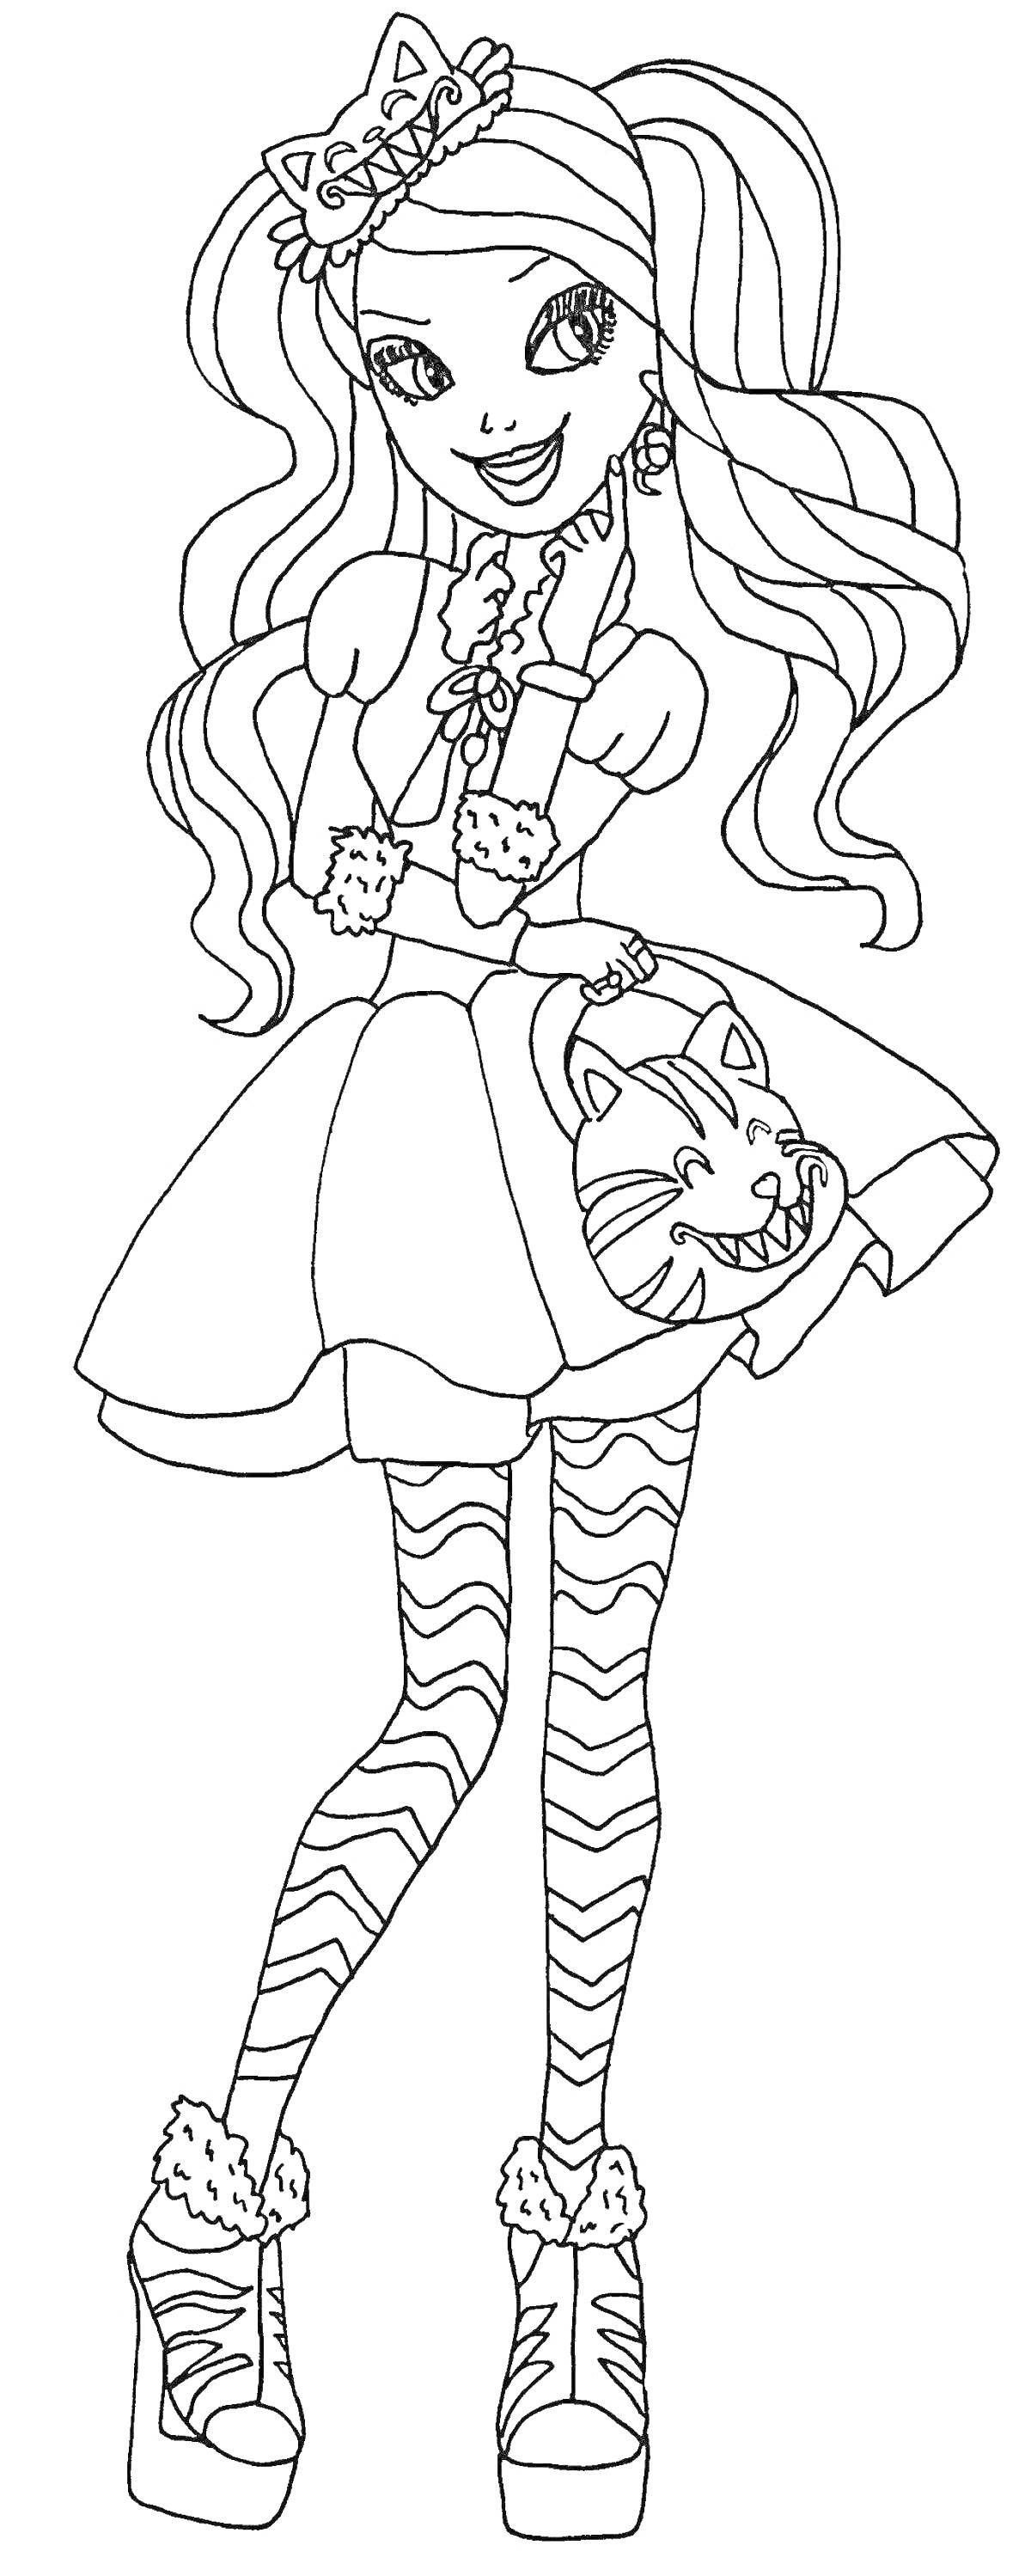 Раскраска Девушка из Эвер Афтер Хай с кошачьими ушками, волнистыми волосами, в платье с изображением кошки и полосатыми леггинсами, на высоких ботинках с пушистыми манжетами